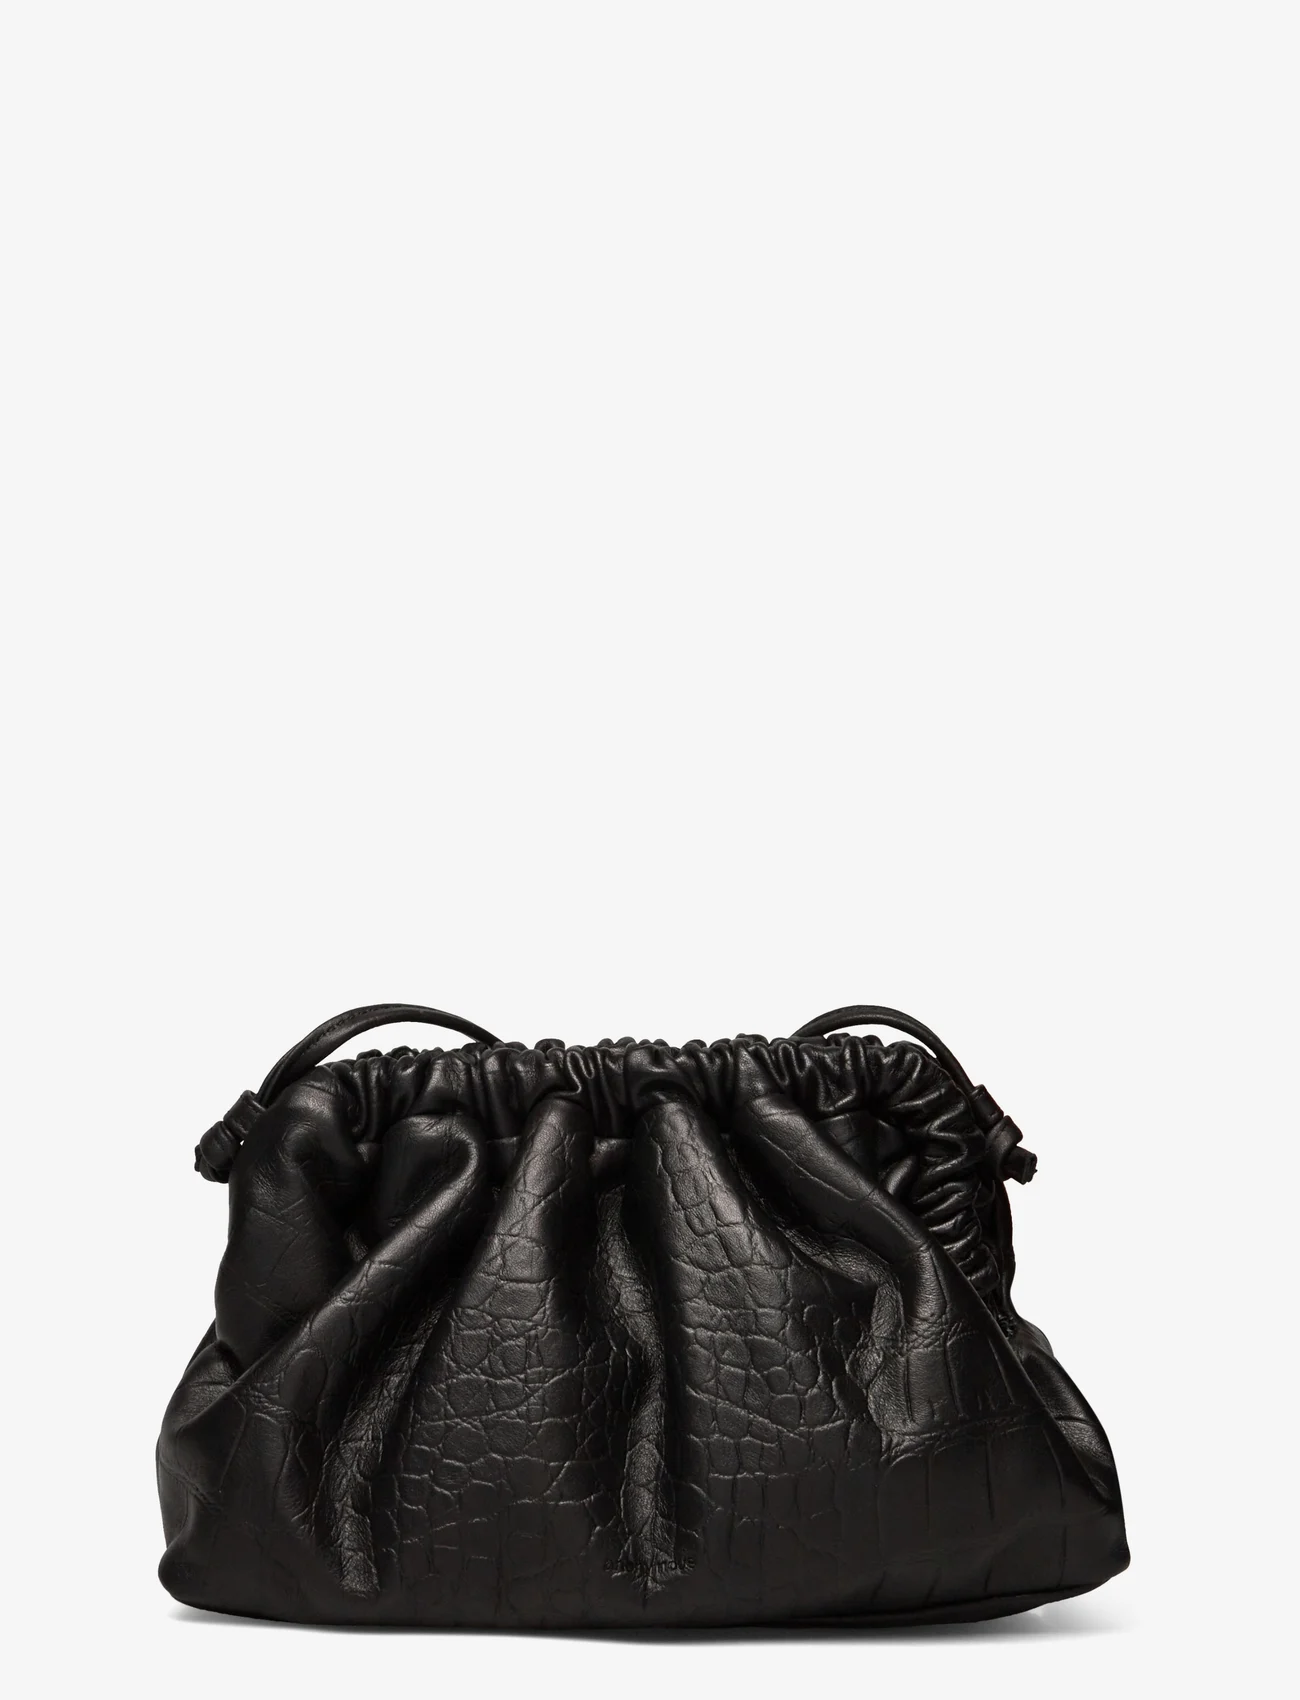 Anonymous Copenhagen - Hally petite cloud bag - odzież imprezowa w cenach outletowych - croco calf black - 1